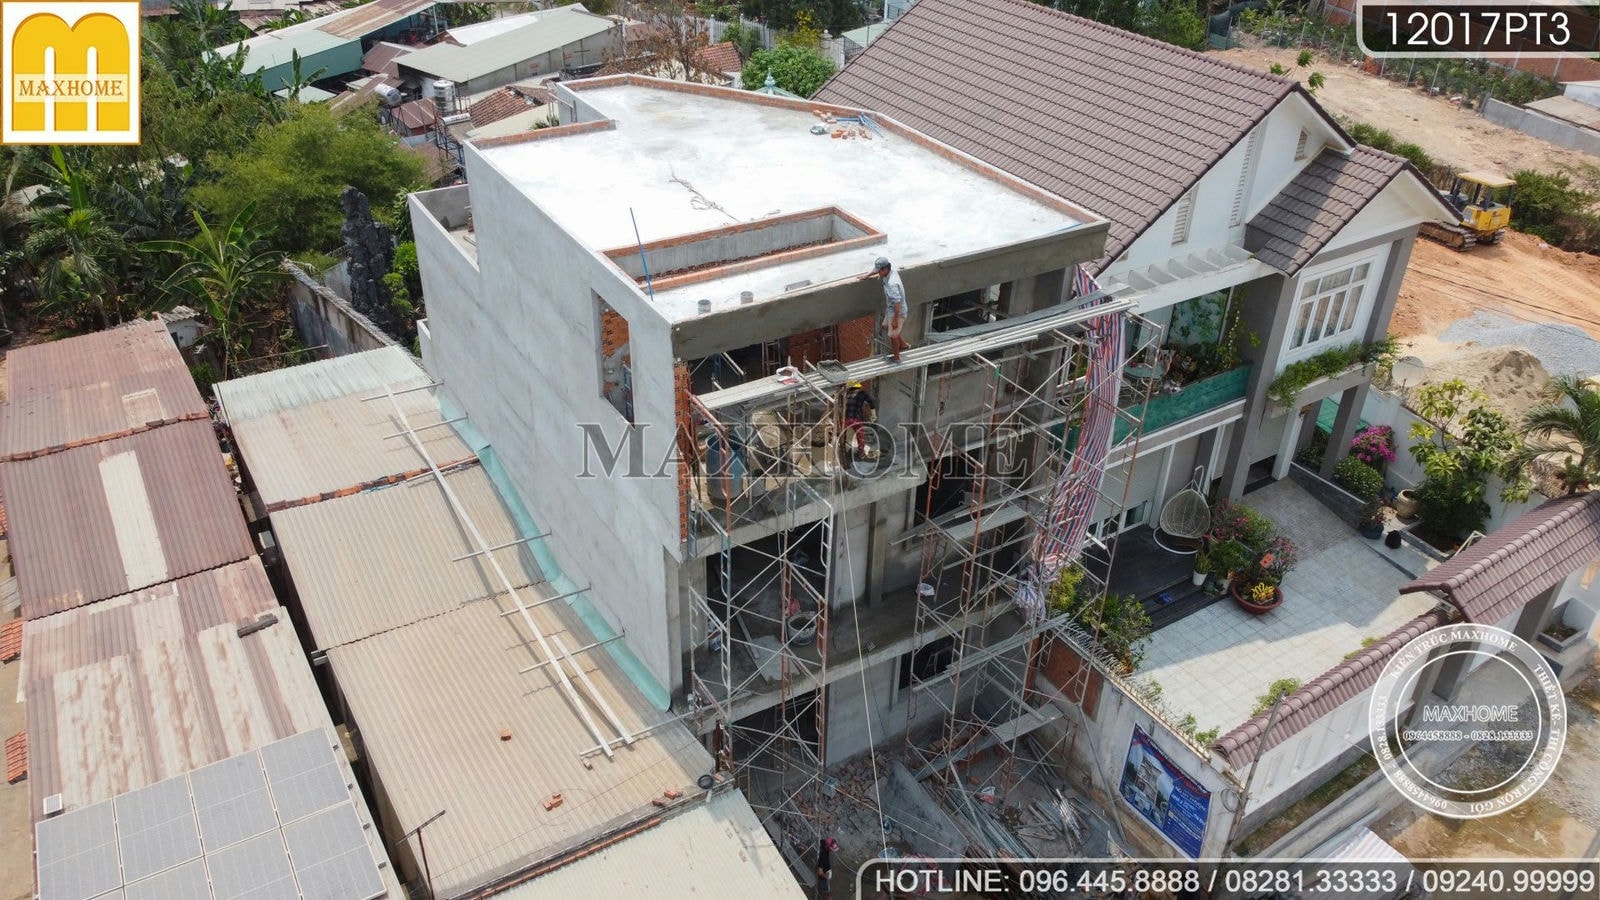 Ngôi nhà phố 2 tầng 1 tum đang trong giai đoạn hoàn thiện tại Bình Dương